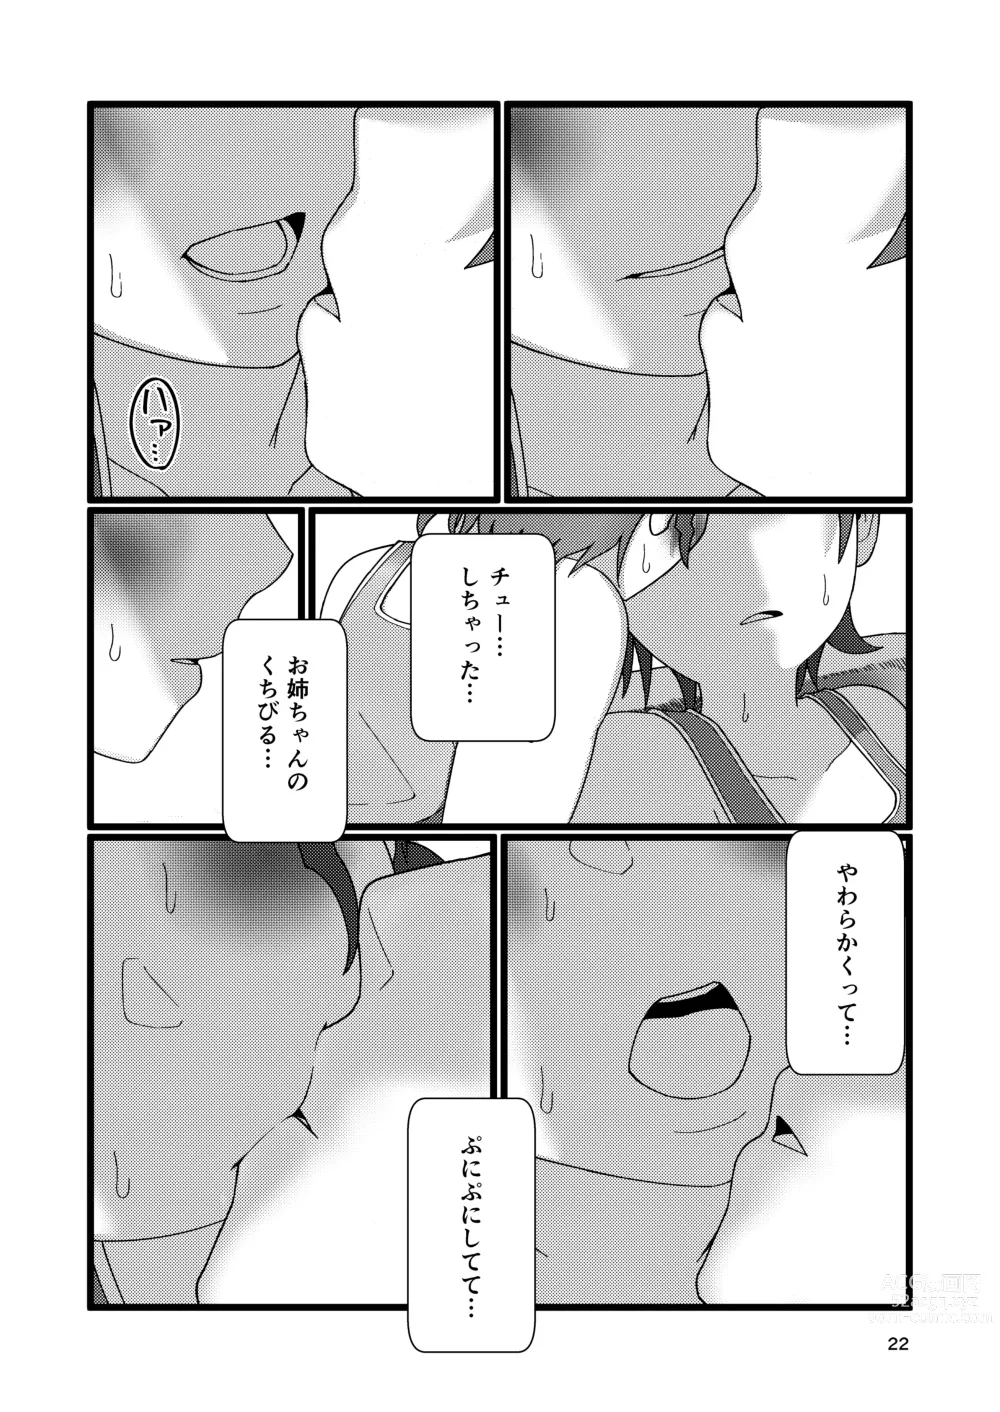 Page 22 of doujinshi Boku to Natsuyasumi no Ane